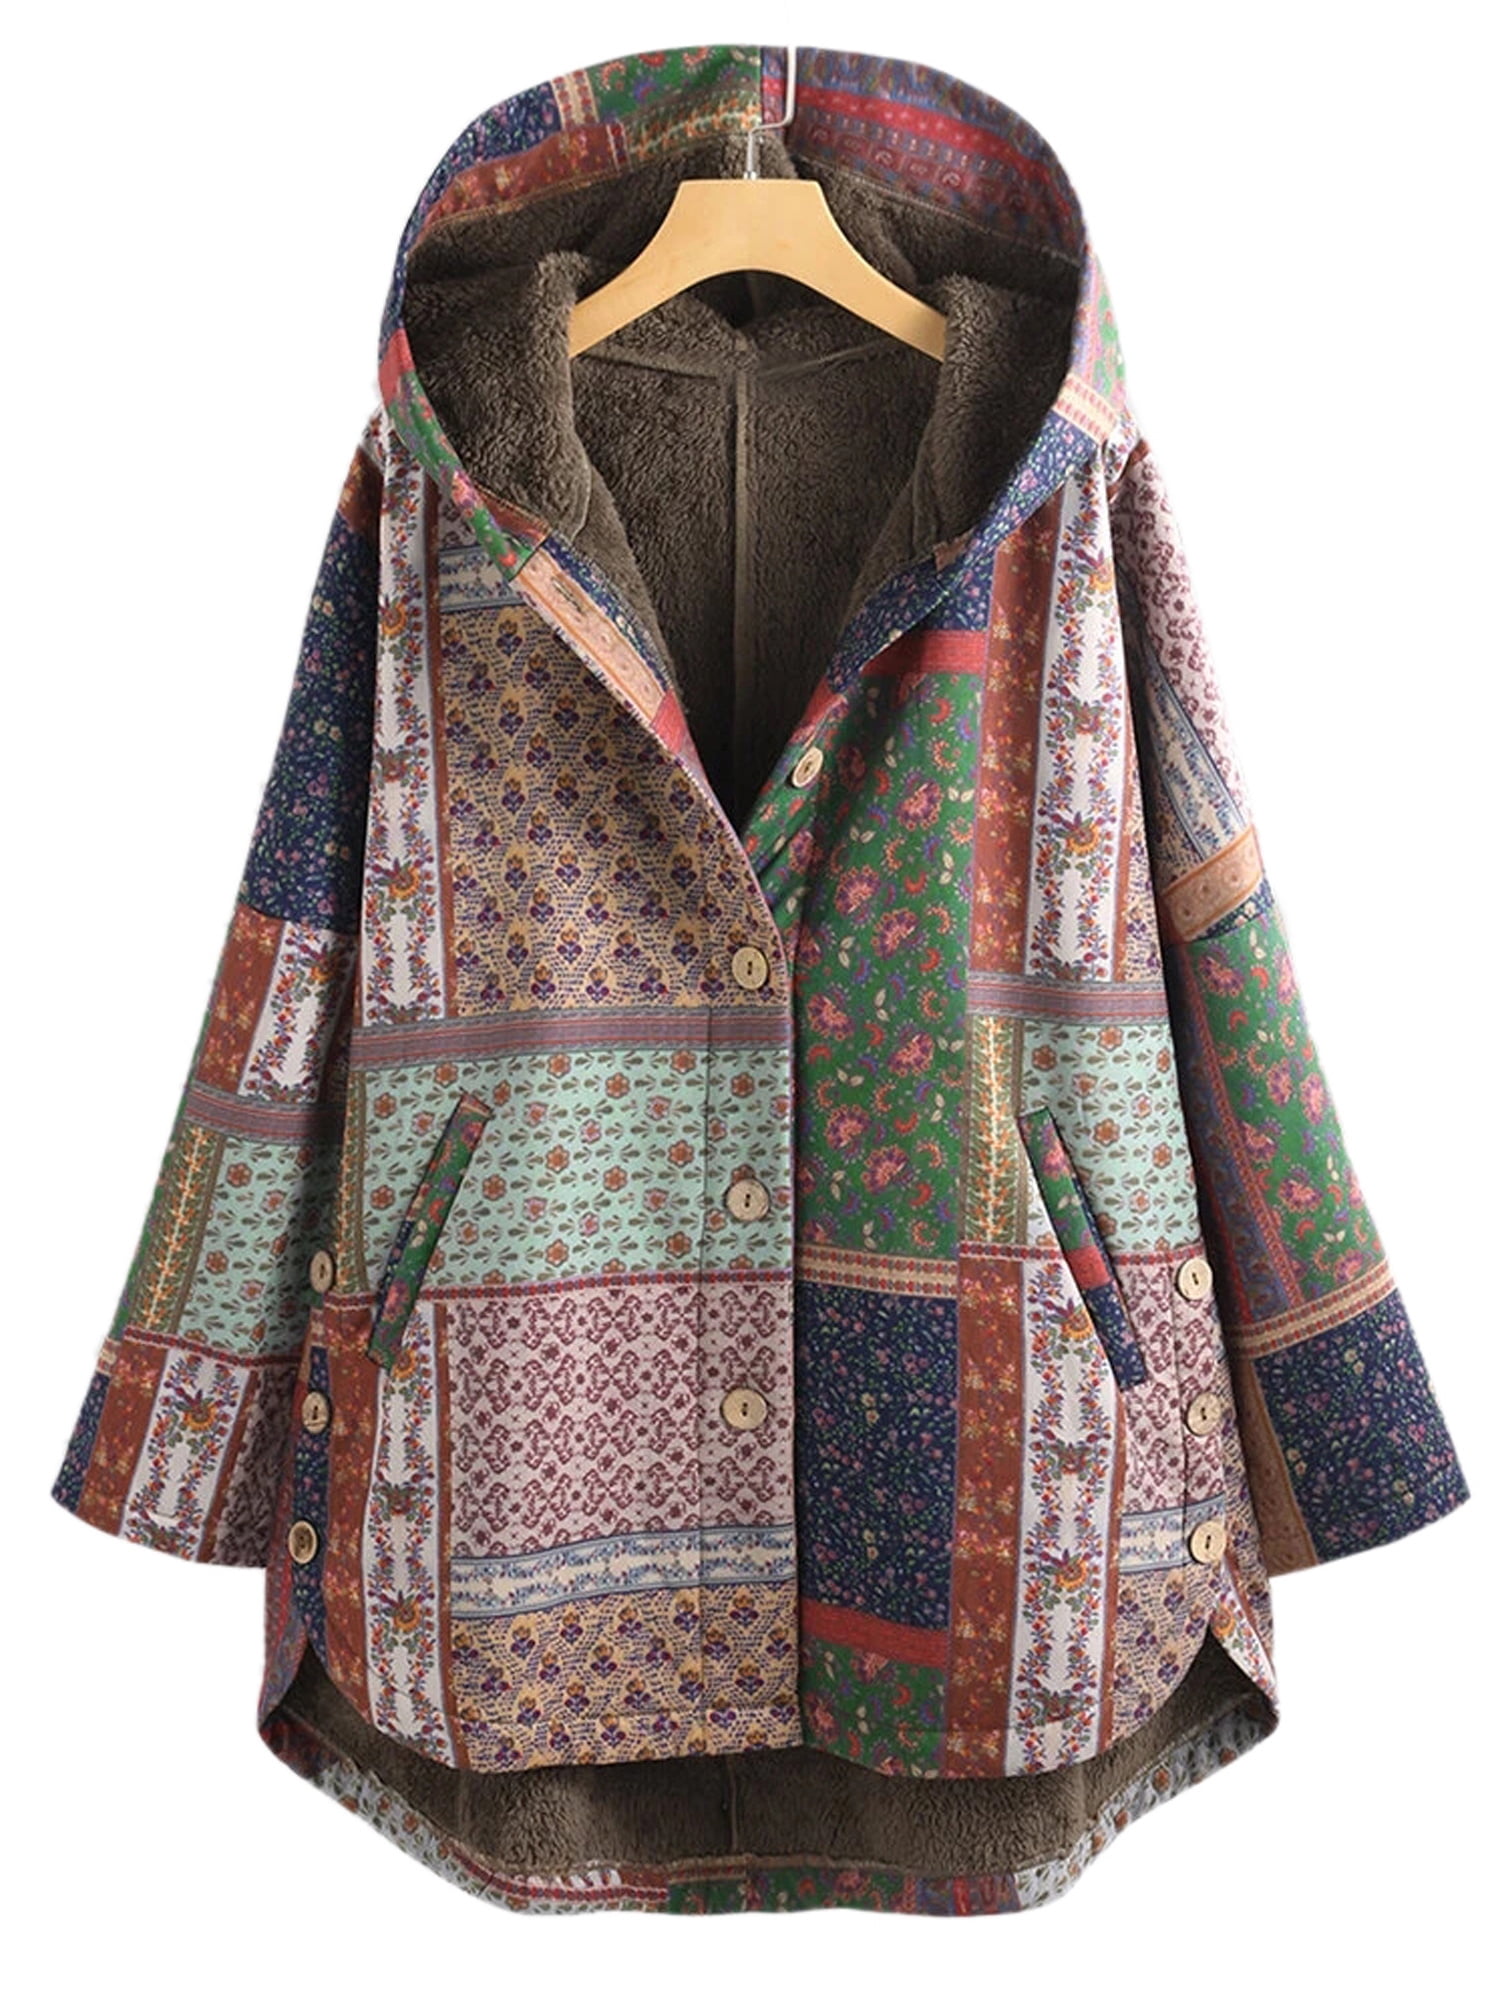 UPAIRC Womens Boho Floral Print Fleece Hooded Coat Ladies Casual Loose ...